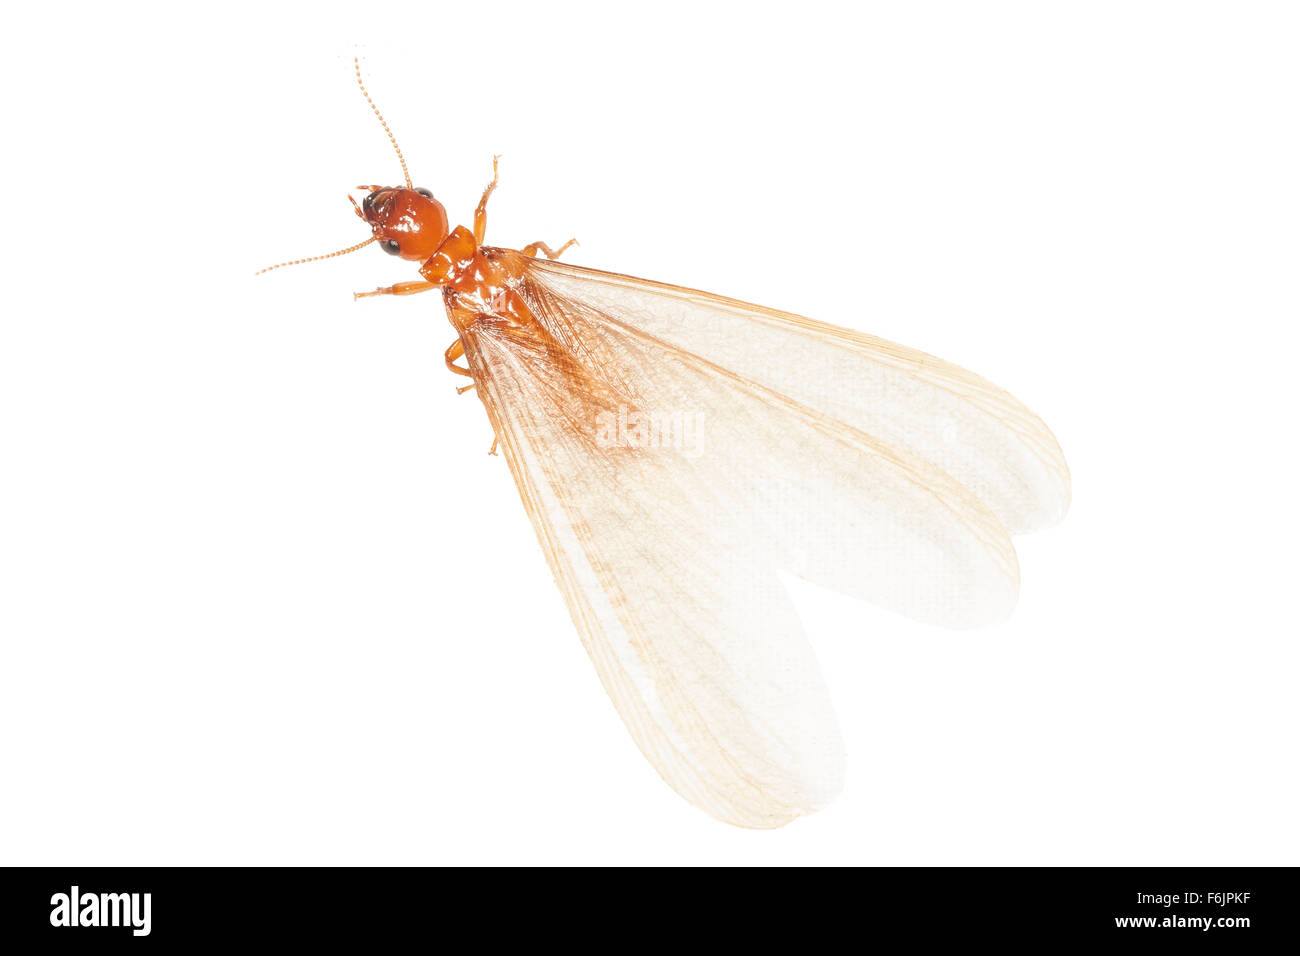 Un termite adultes ailés (une alate). Photographié sur un fond blanc. Banque D'Images